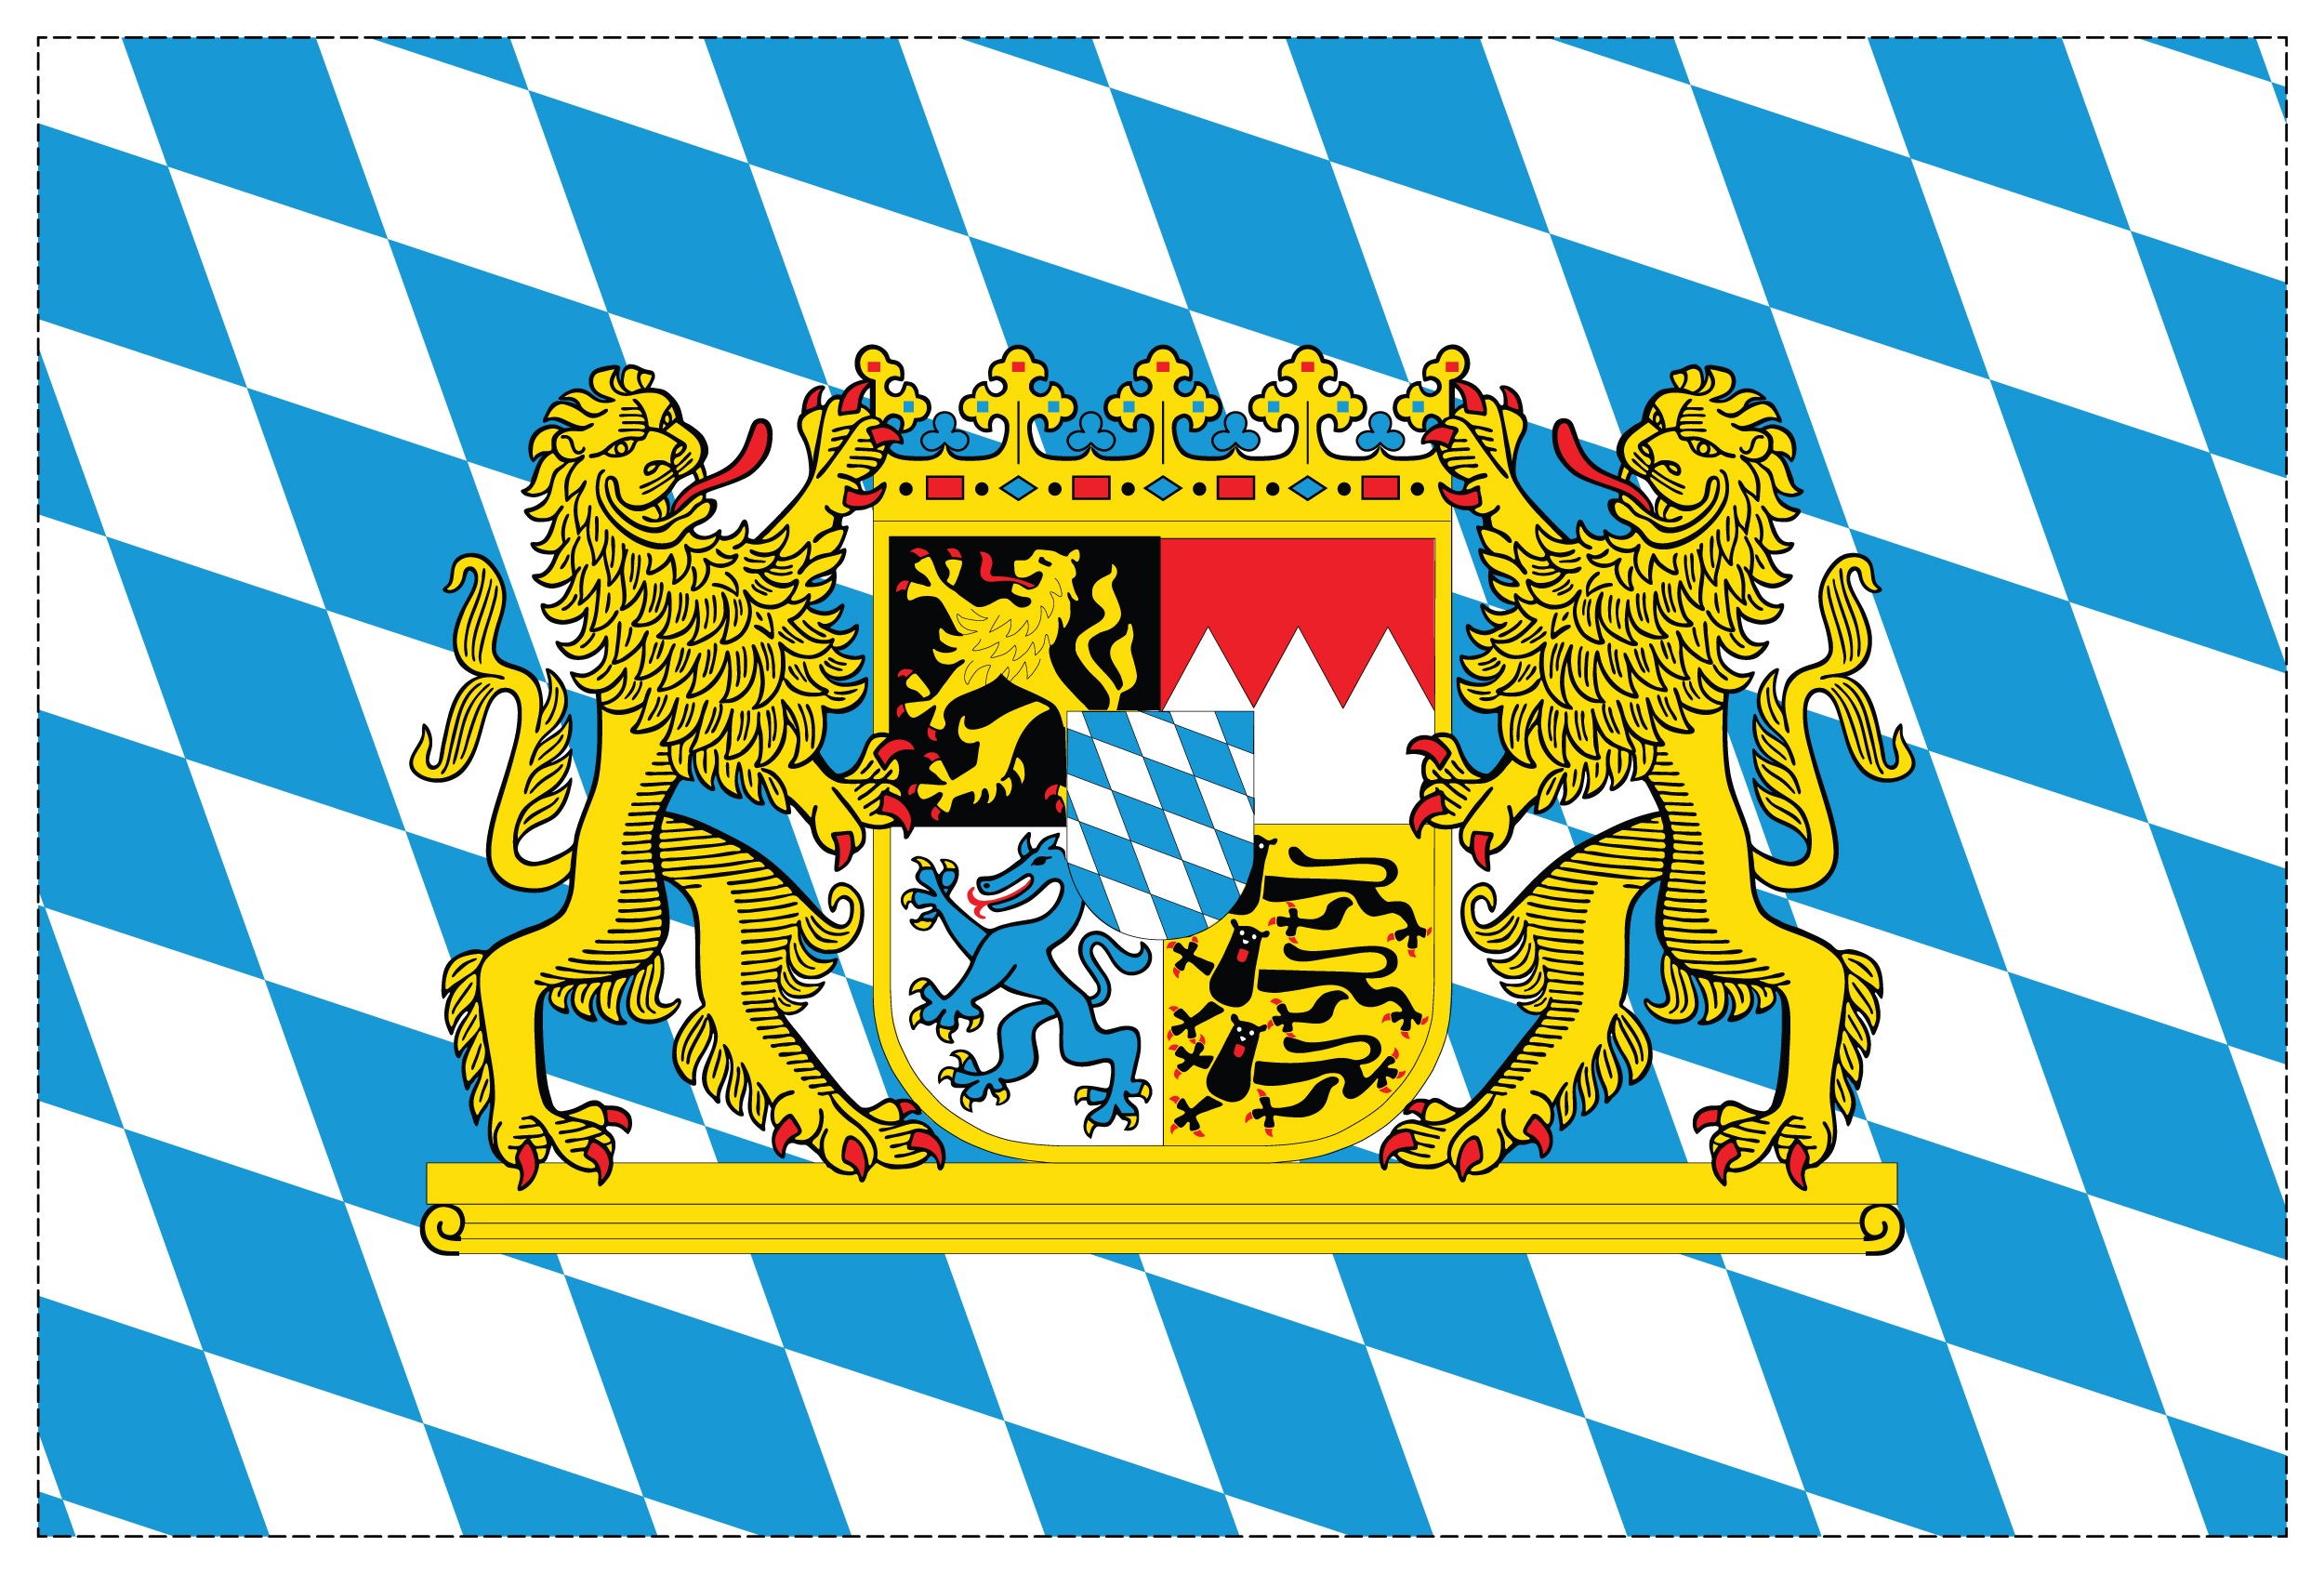 10 Stück - Aufkleber - Deutschland-Flagge - 7,4 x 5,2 cm